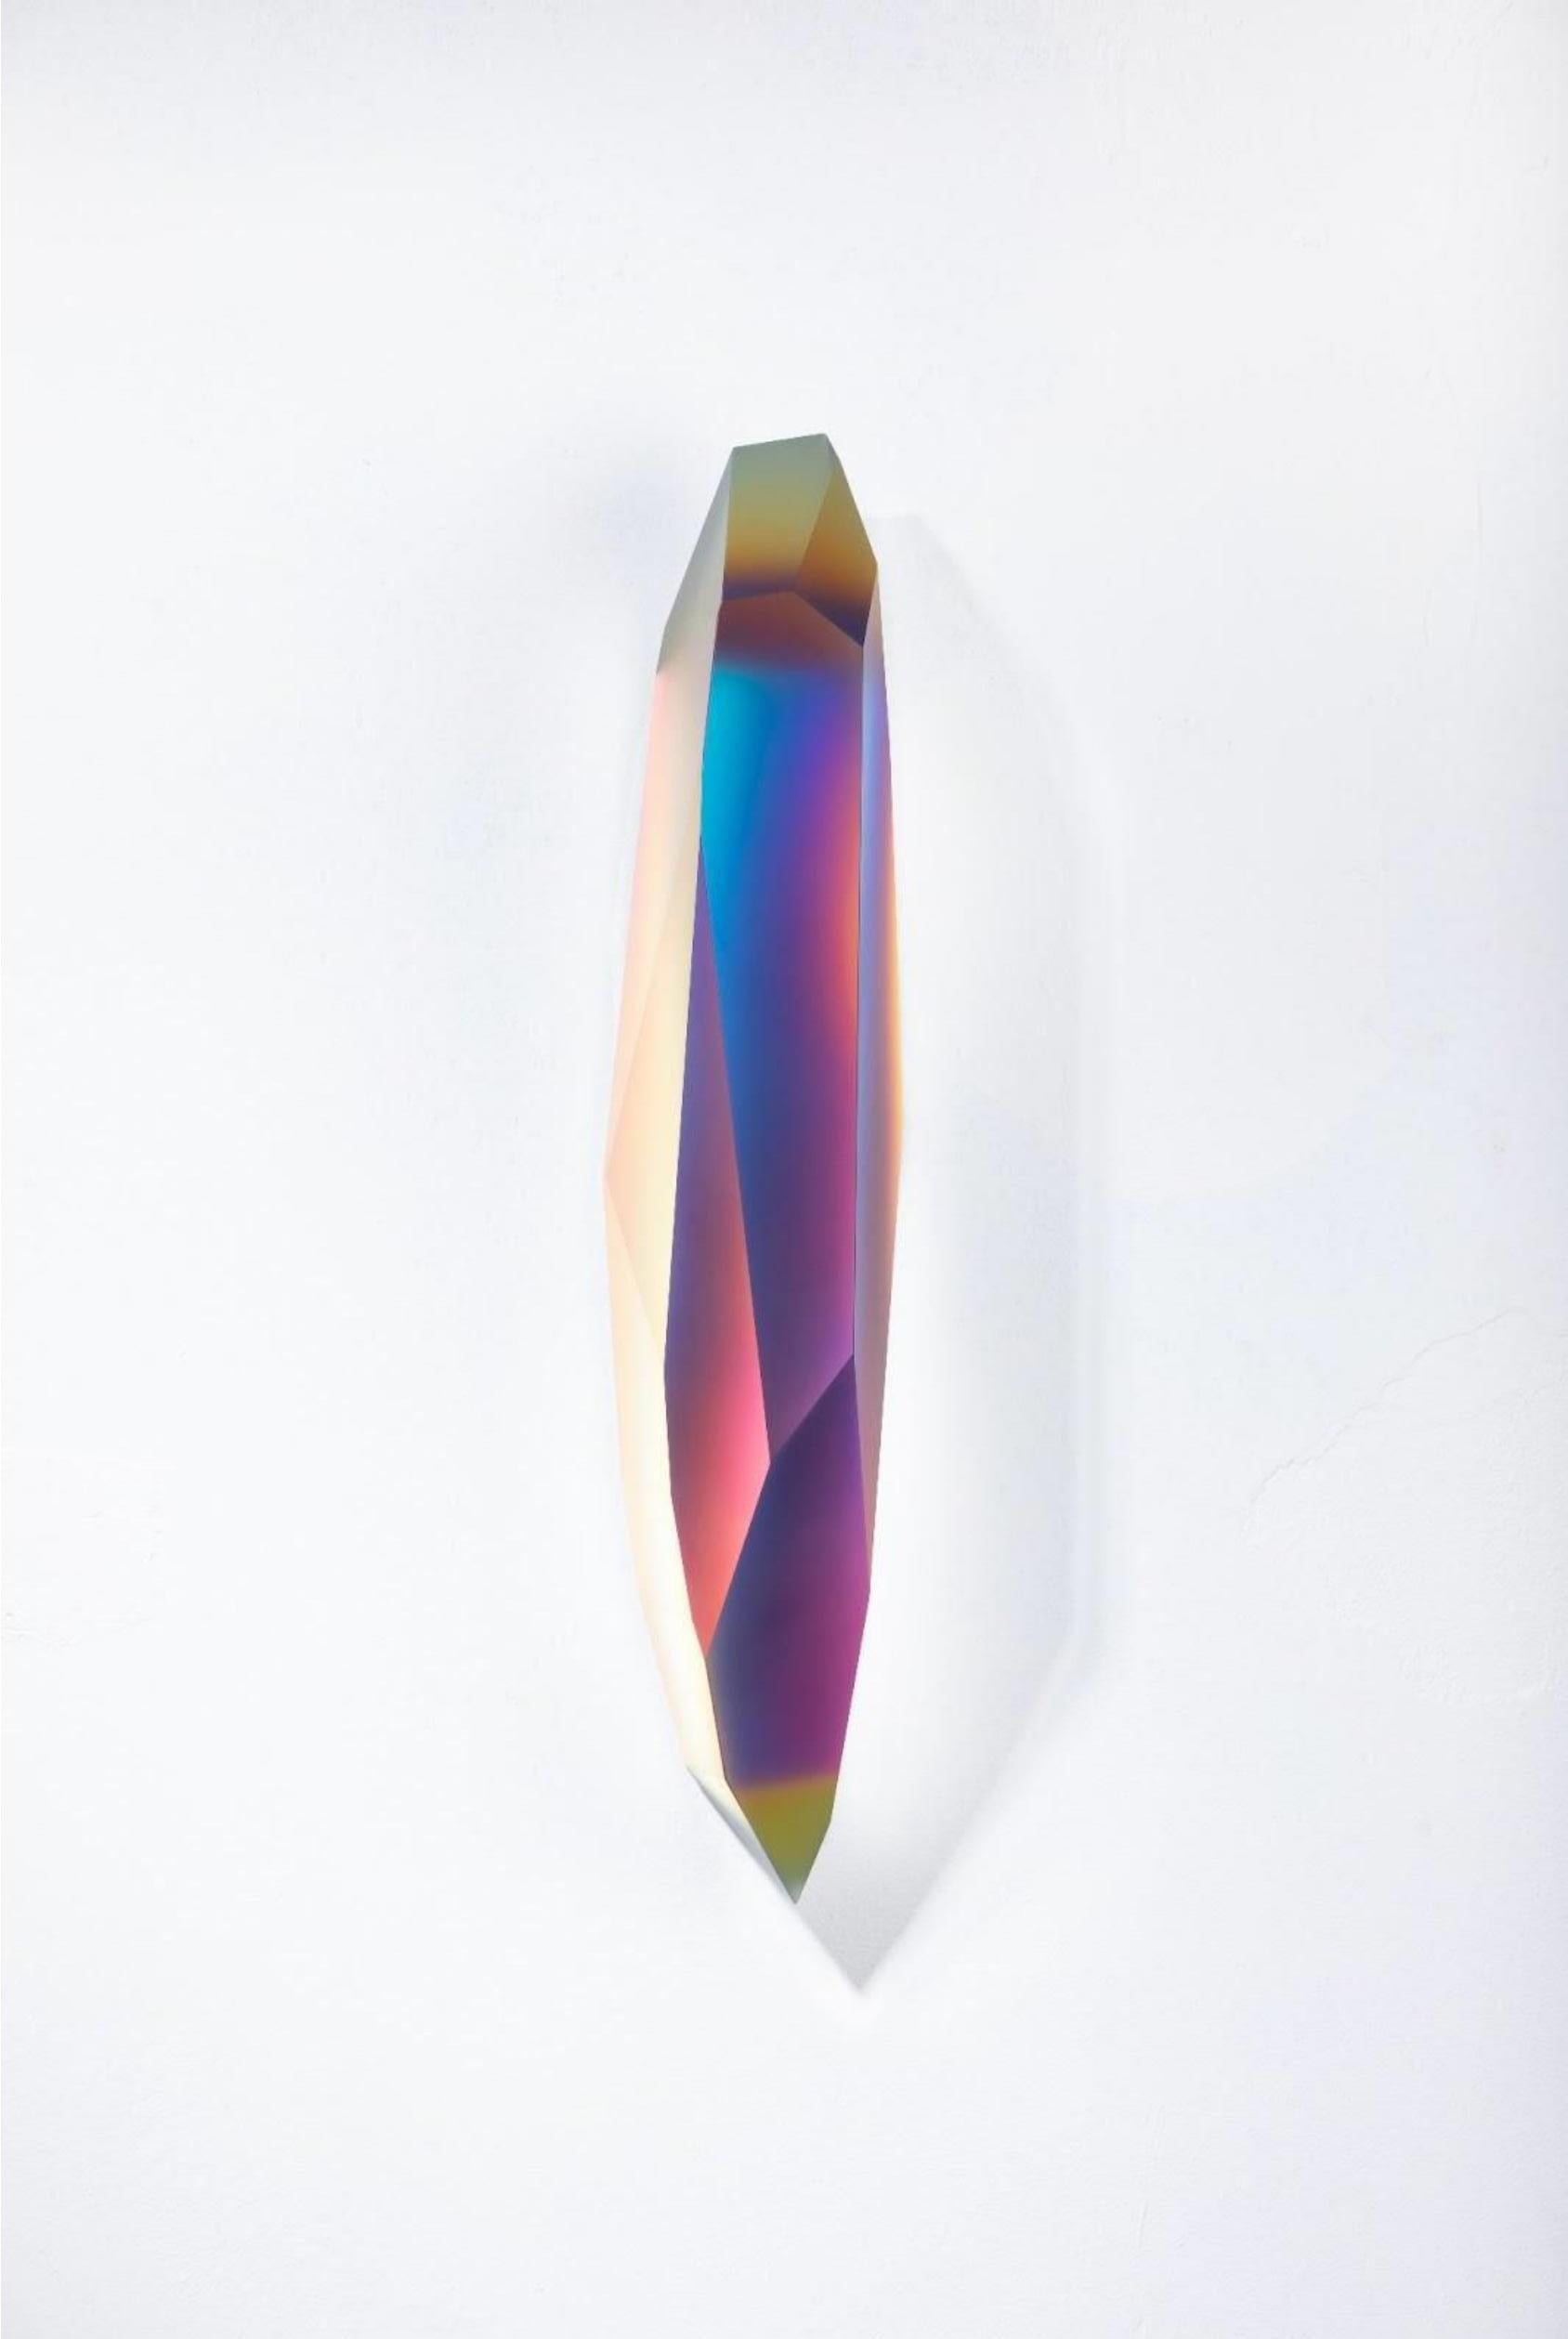 Pretty Mirage 0204 von Lukas Novak
Abmessungen: B 16 x T 16 x H 63 cm
MATERIALIEN: Geschliffenes Glas, Kristall, Farbverlauf

Die Pretty Mirage Serie ist aus Wandkristallen gefertigt. Es ist eine einzigartige Komposition aus Glasschliffen und einem